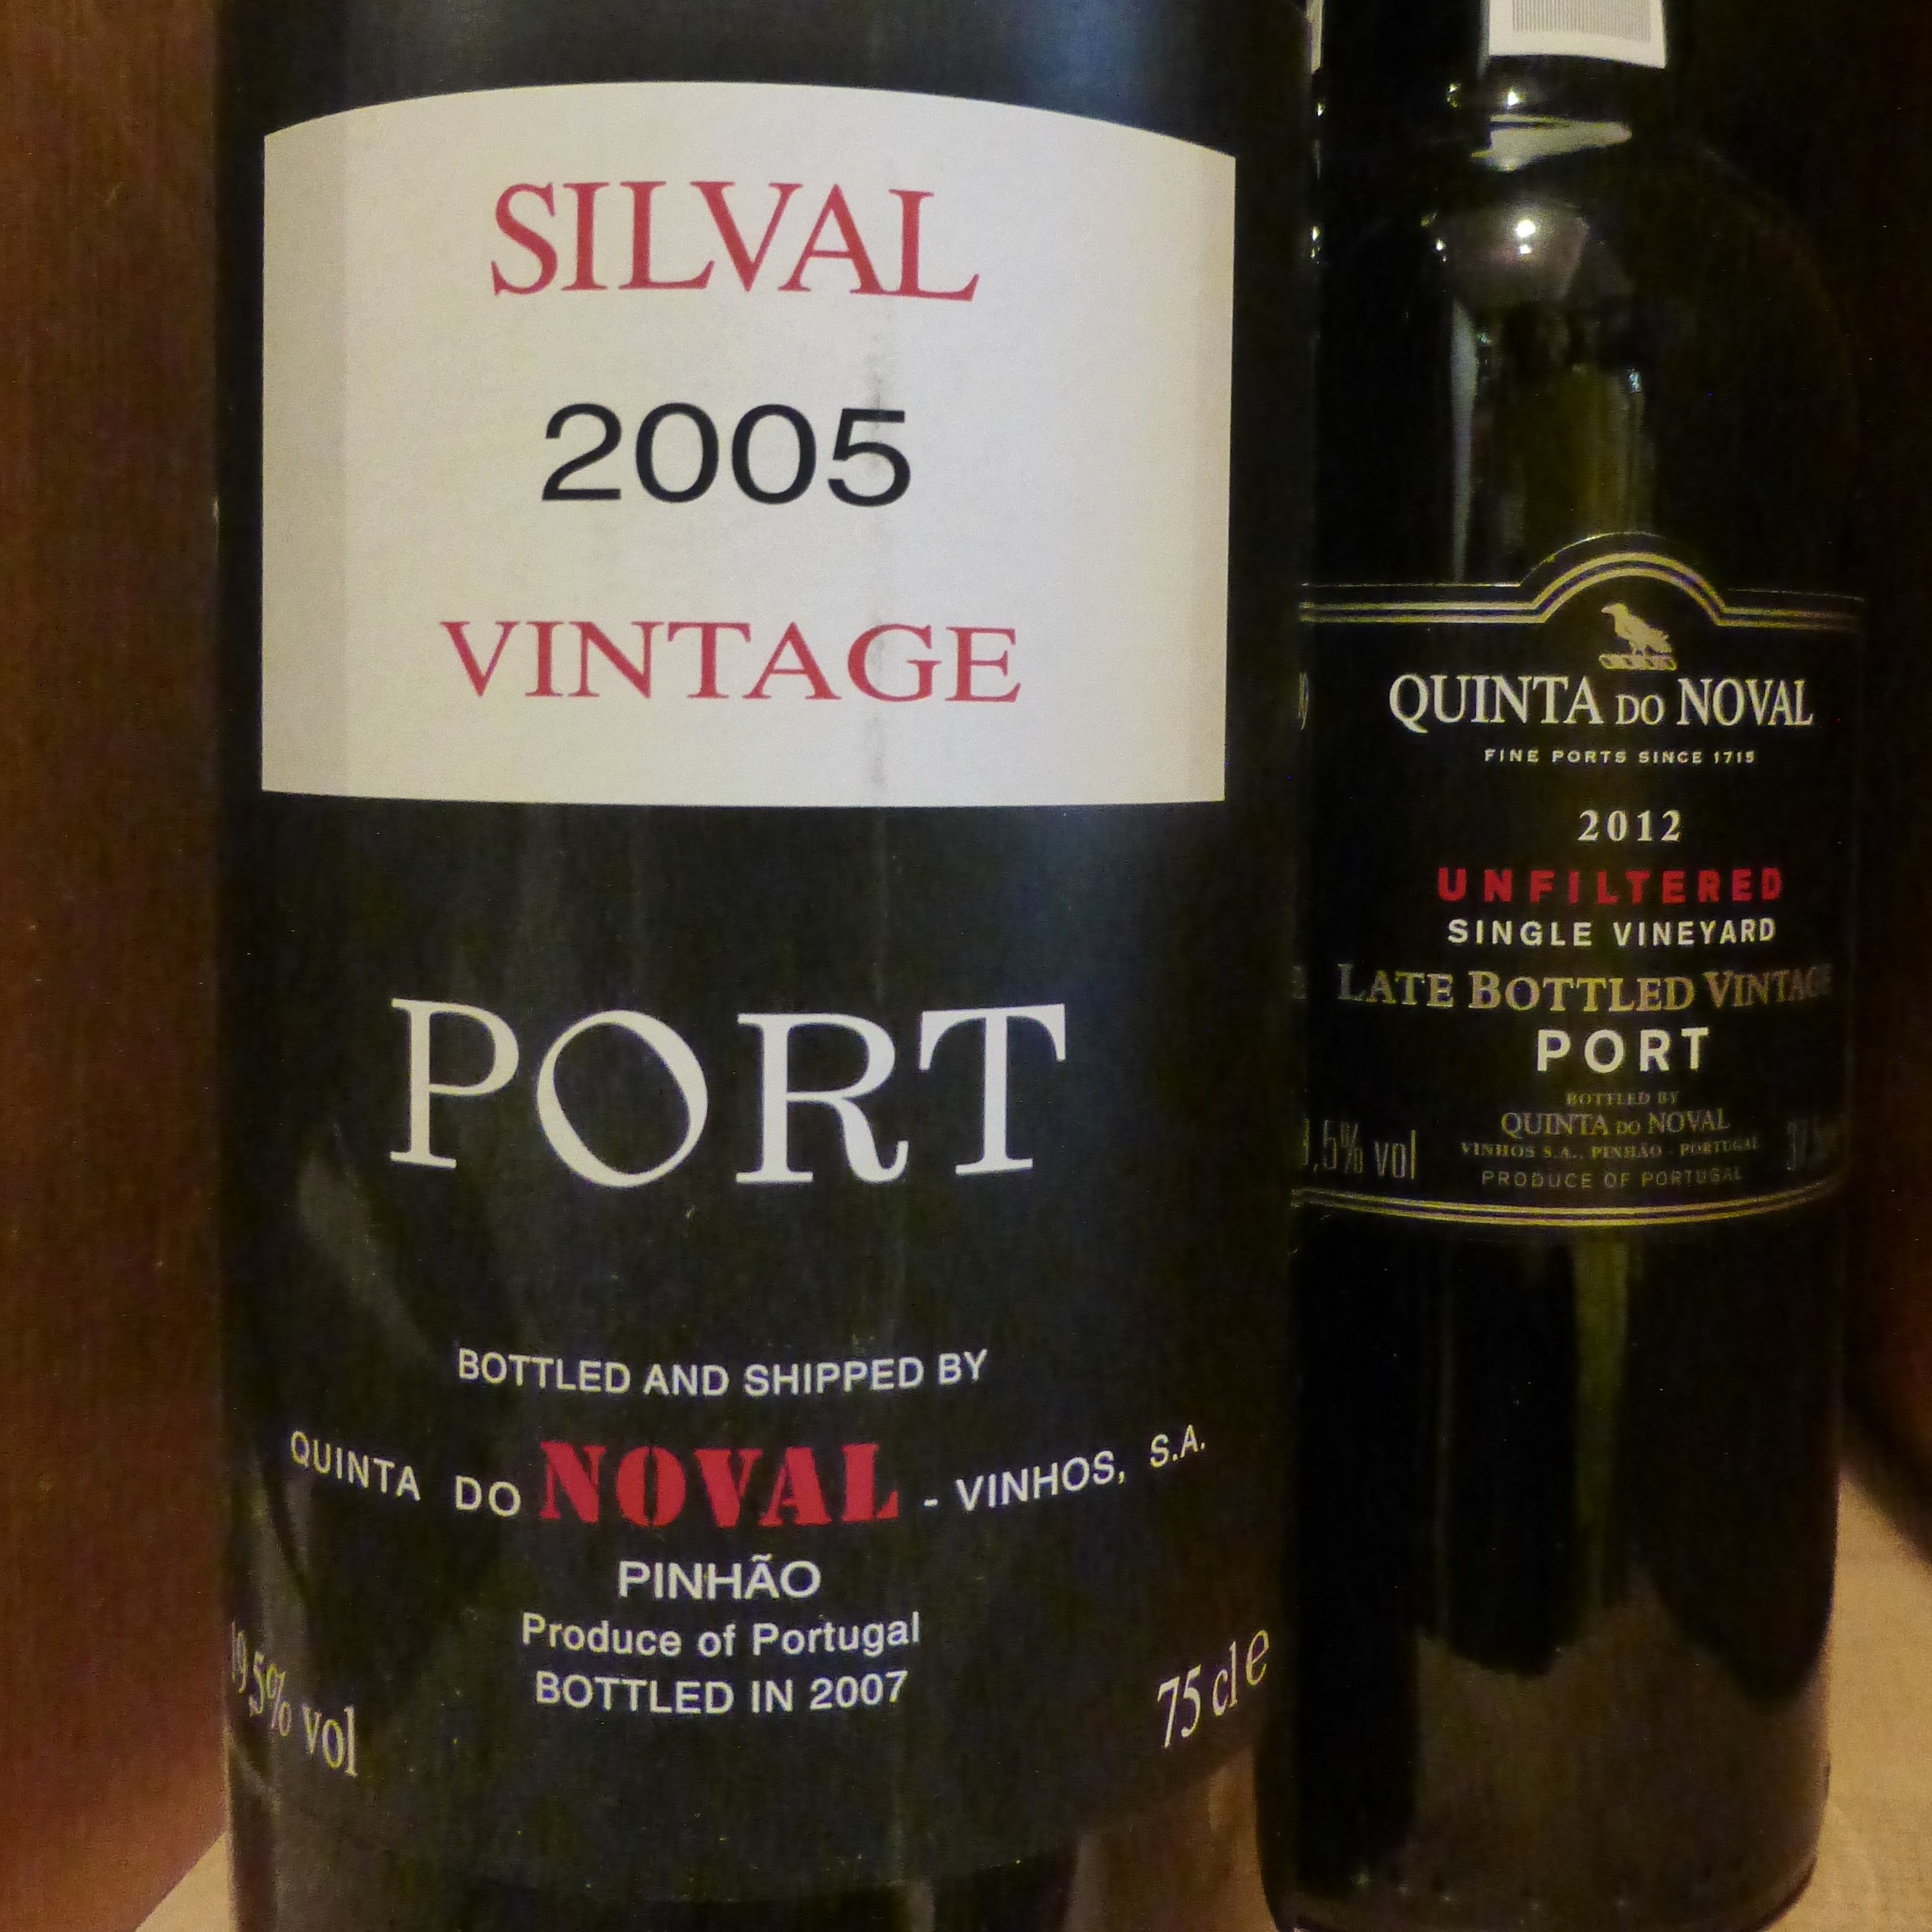 2005 SILVAL Vintage Port, Quinta do Noval